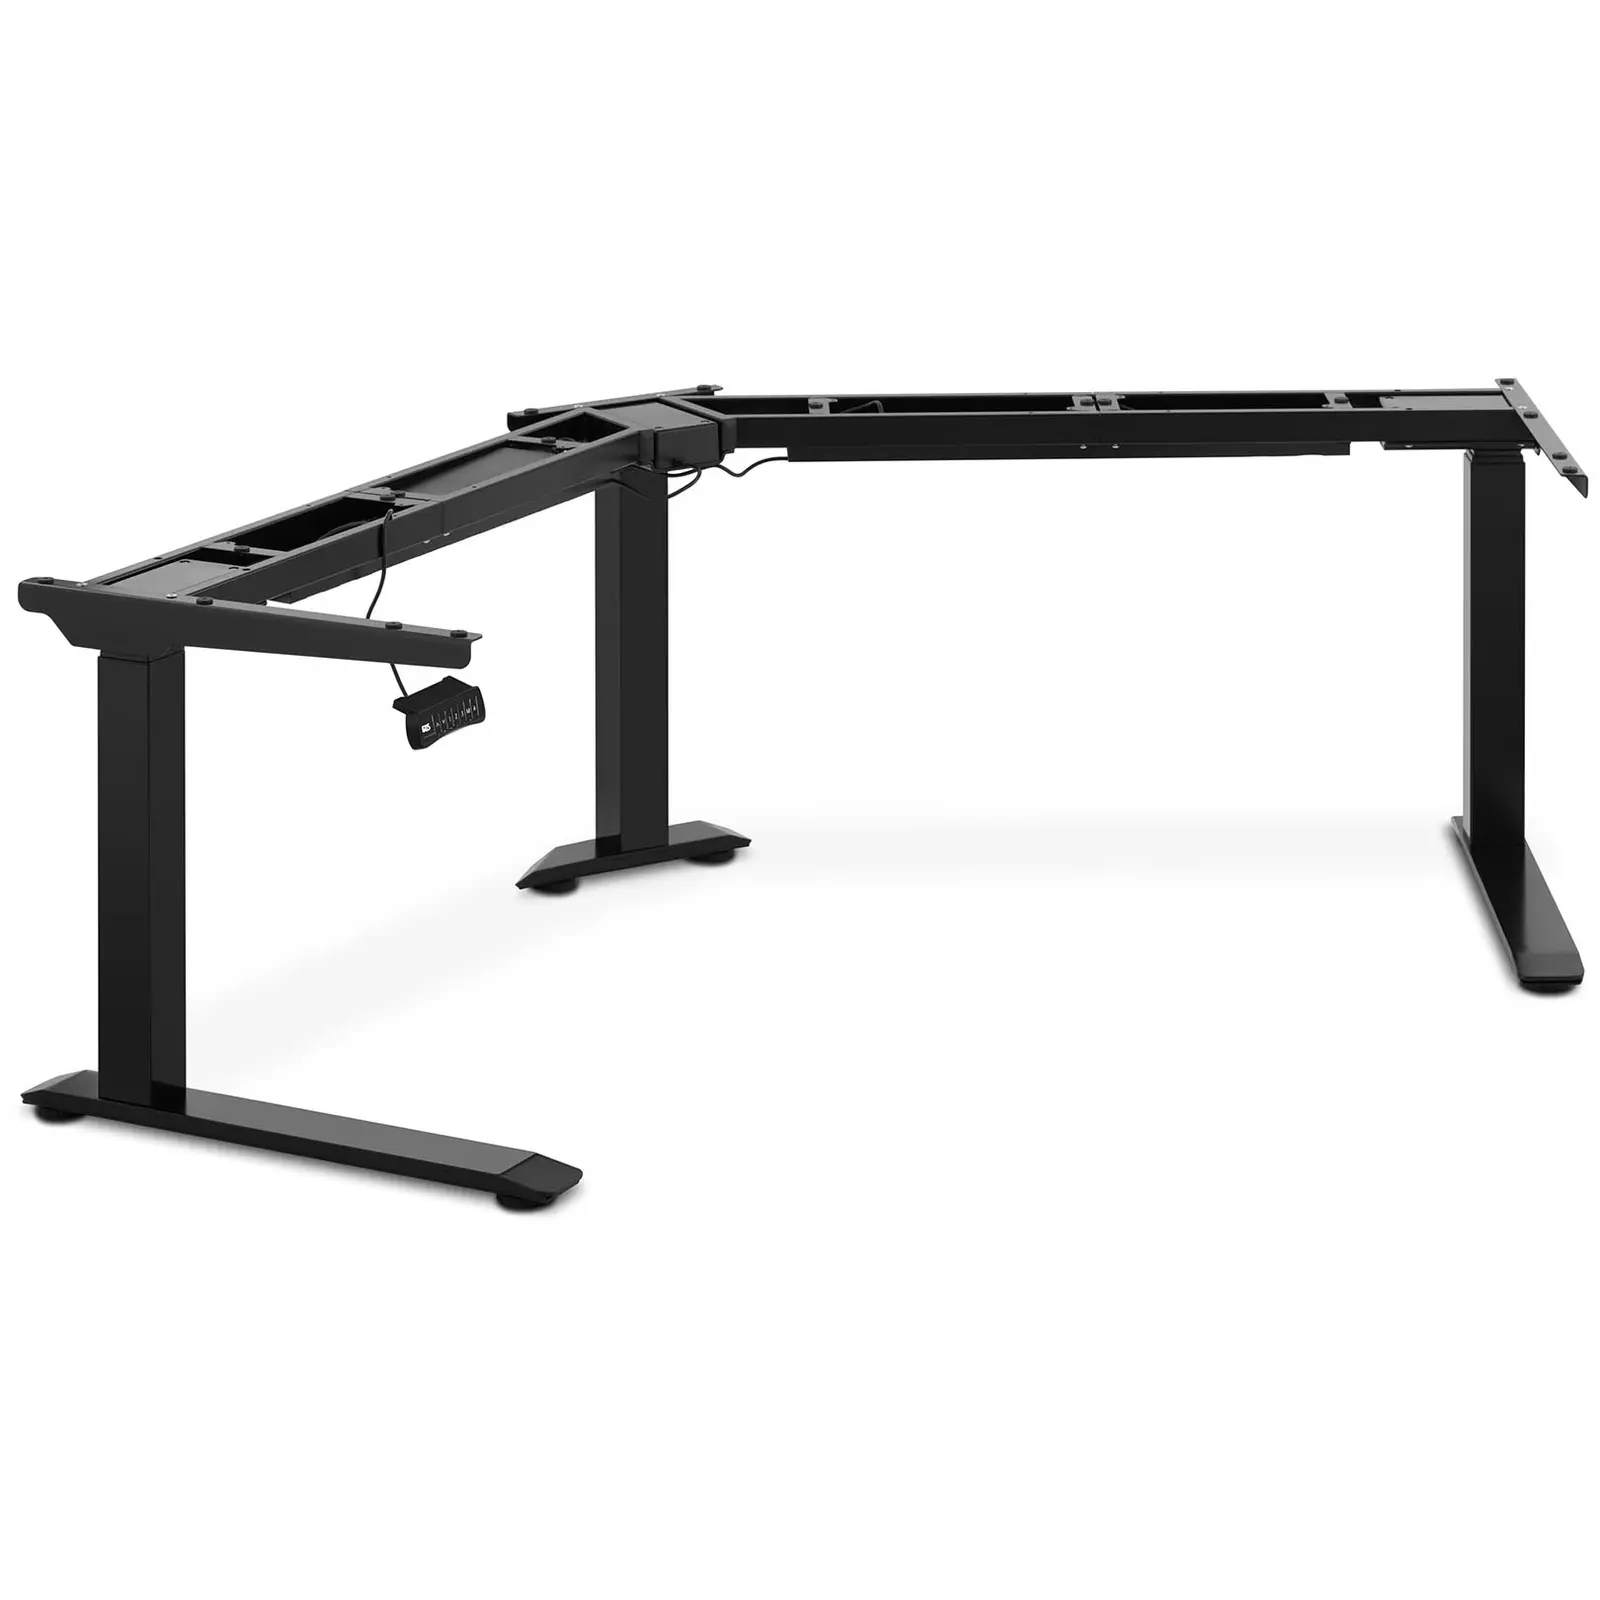 Adjustable Corner Desk Frame - Height: 60-125 cm - Width left/right: 116-186 cm - Angle: 120 ° - 150 kg